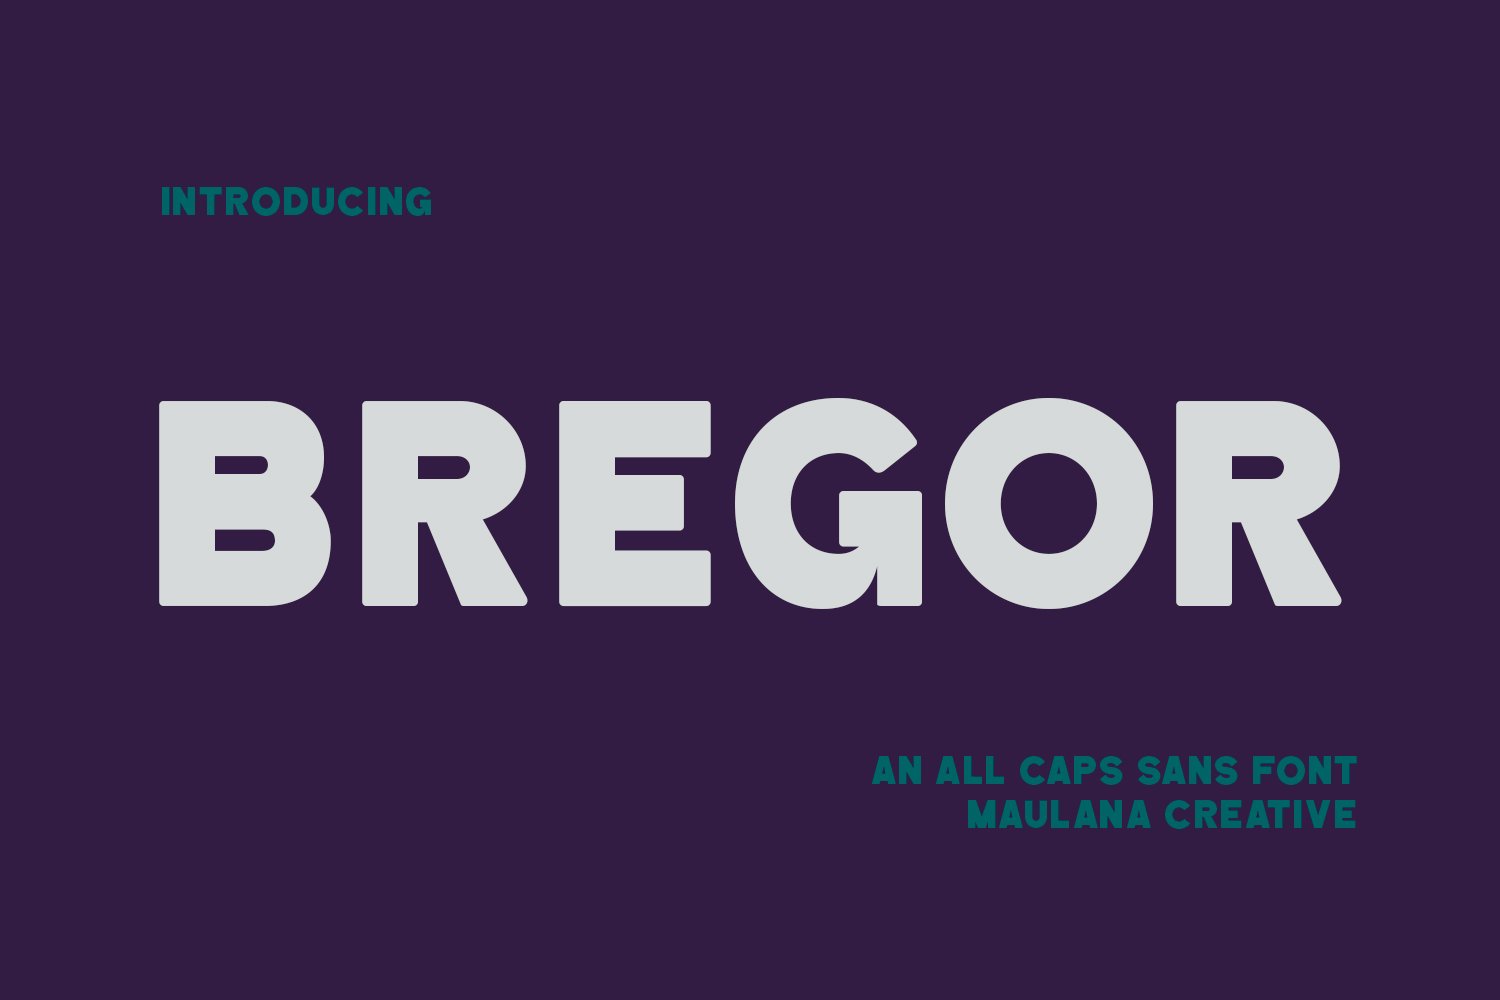 Bregor Sans Display Font cover image.